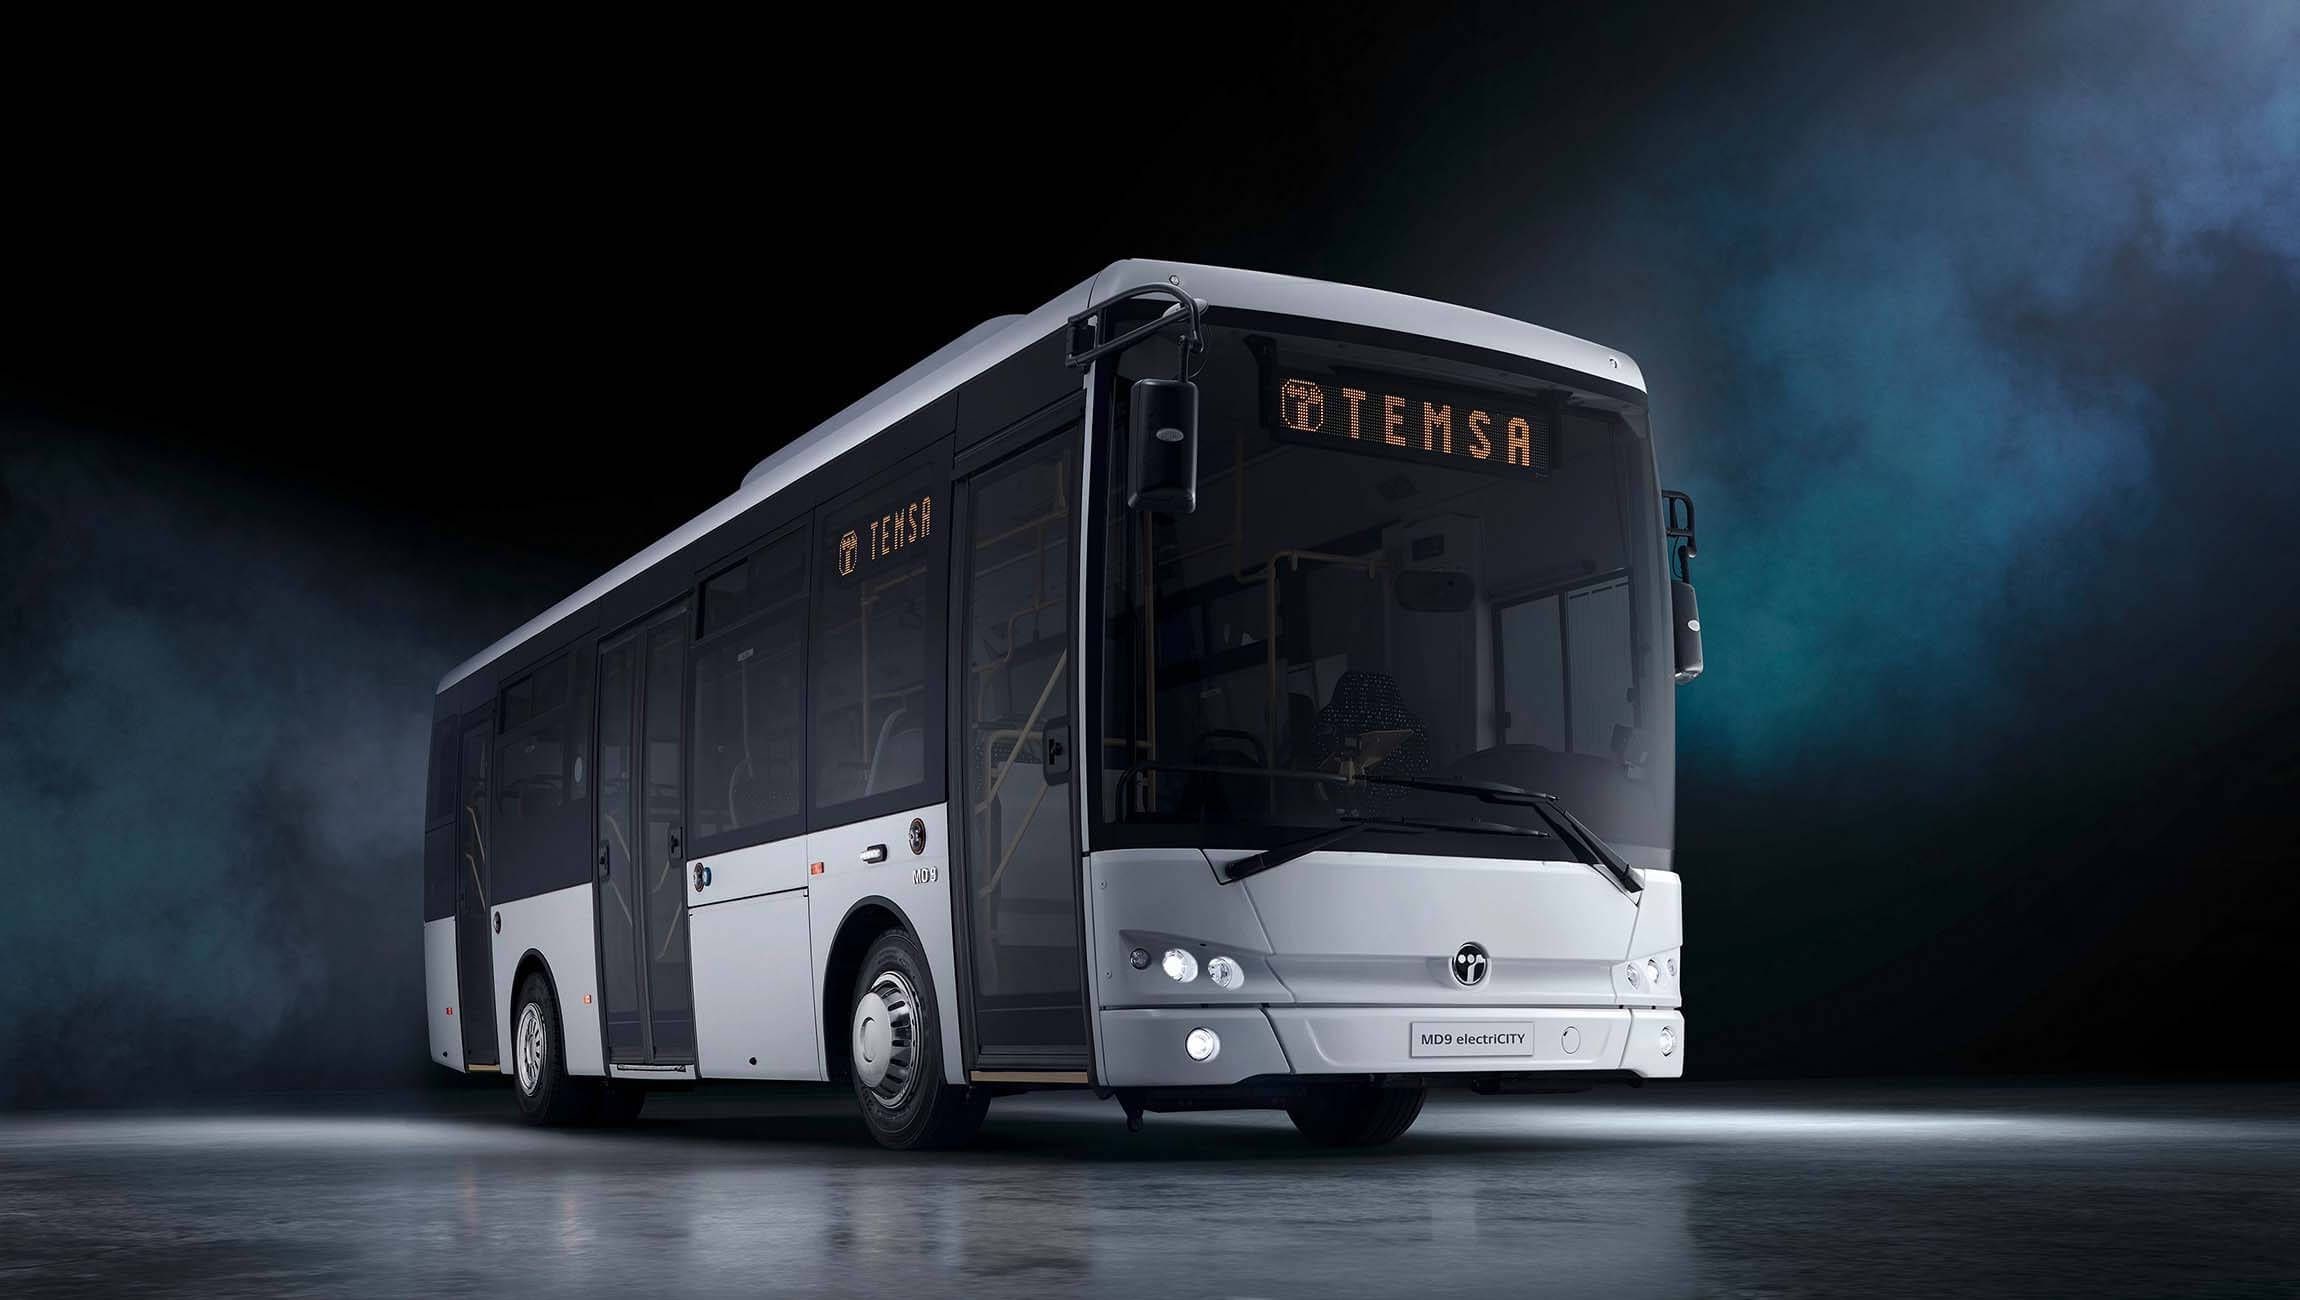 TEMSA, iki elektrikli otobüs modelini Fransa'da görücüye çıkarttı